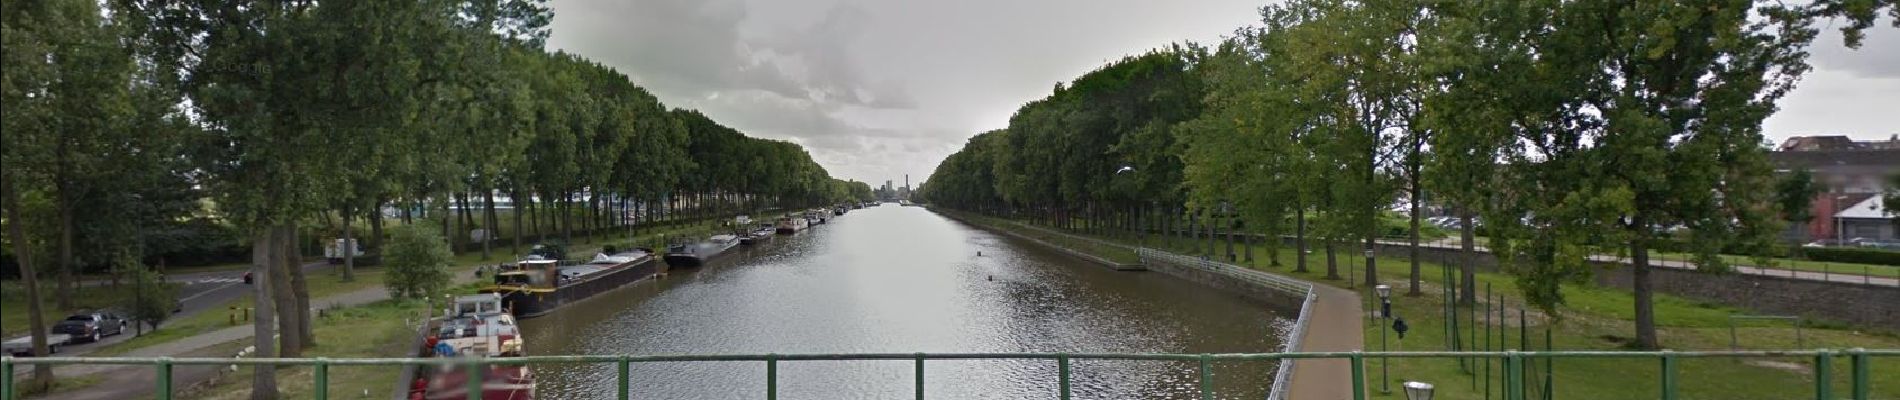 Randonnée Marche Ville de Bruxelles - Canal de Charleroi - Photo